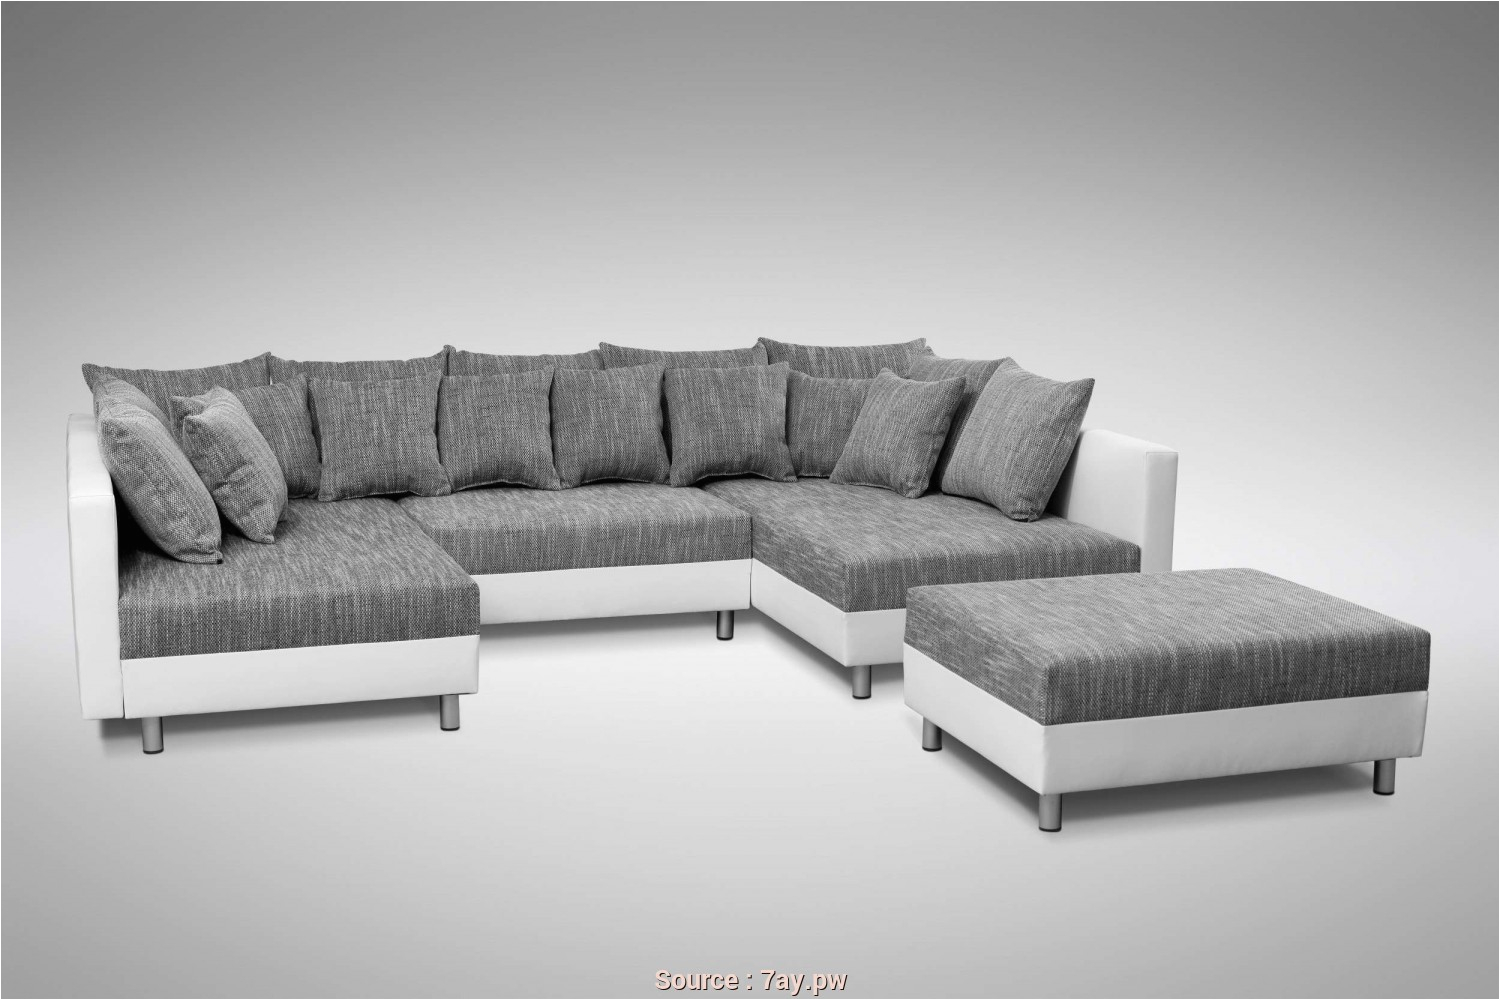 ikea stoffe grau ikea sofas bilder luxus ikea sofa grau schön lager ikea sofa klein sofa grau stoff graue 22